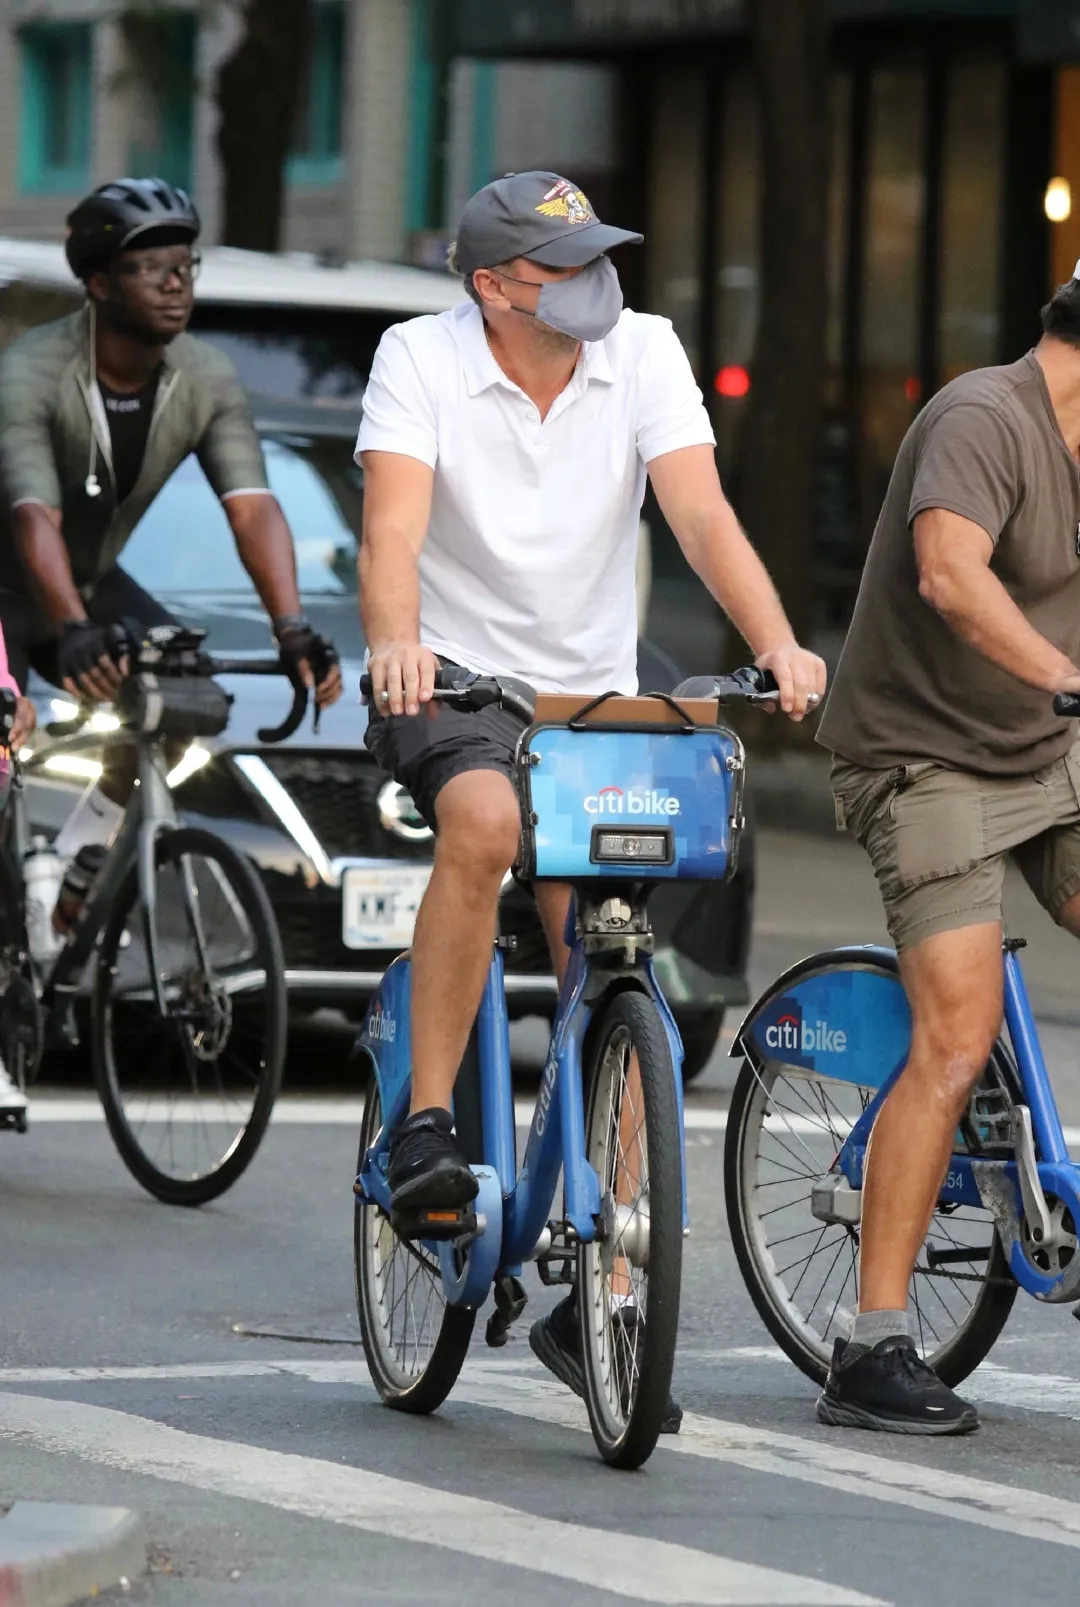 Leonardo DiCaprio rides a shared bike | FMV6